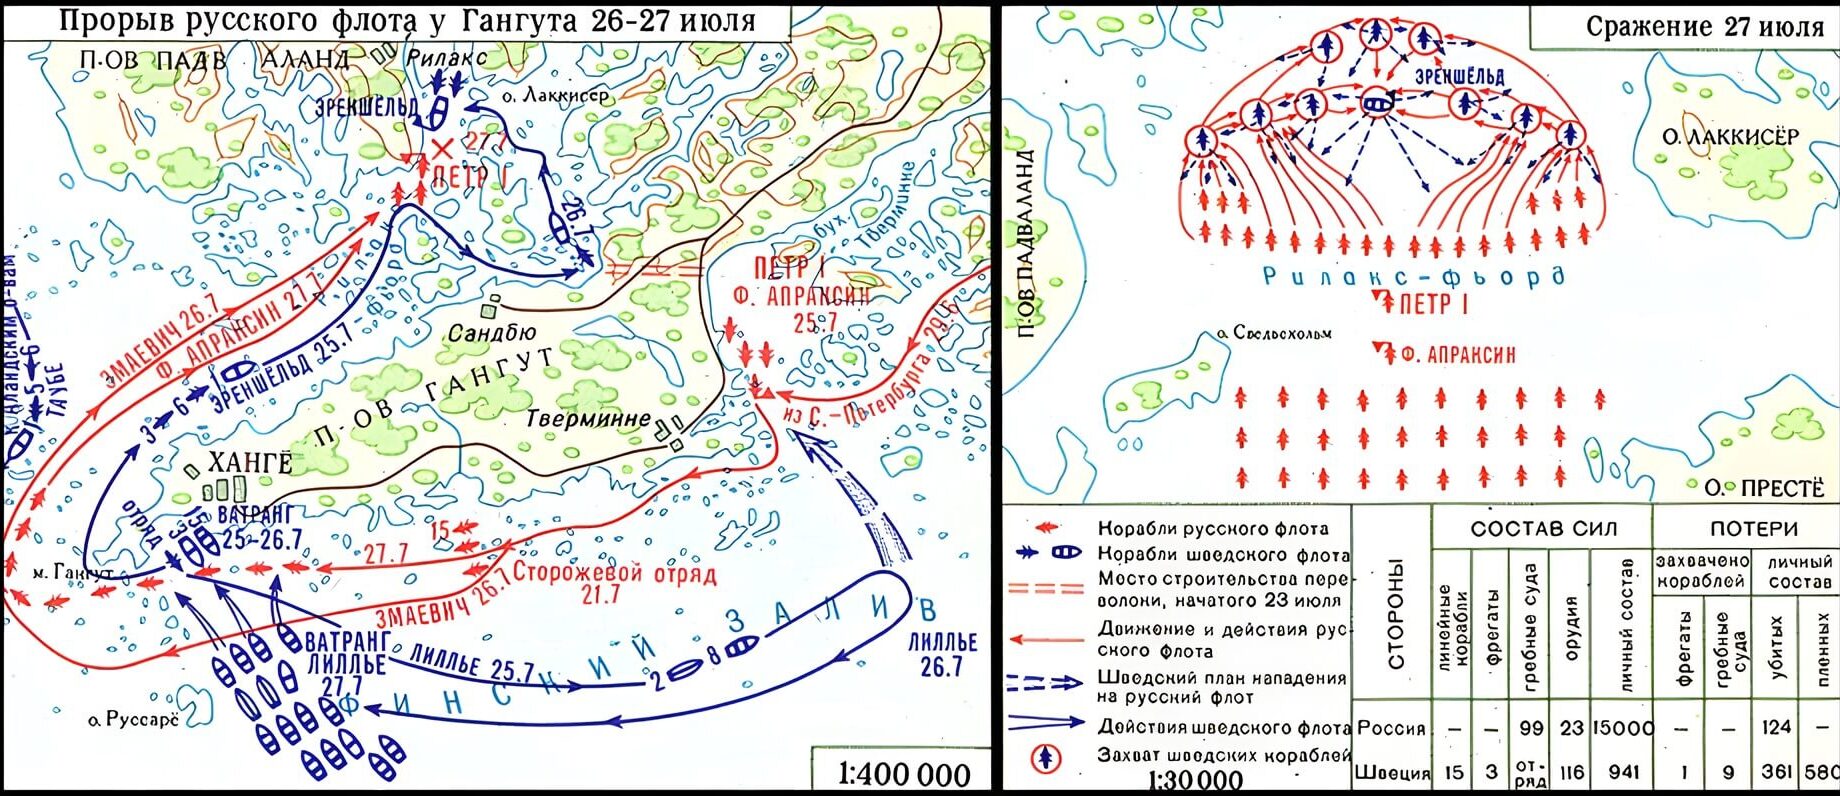 Карта Гангутского морского сражения